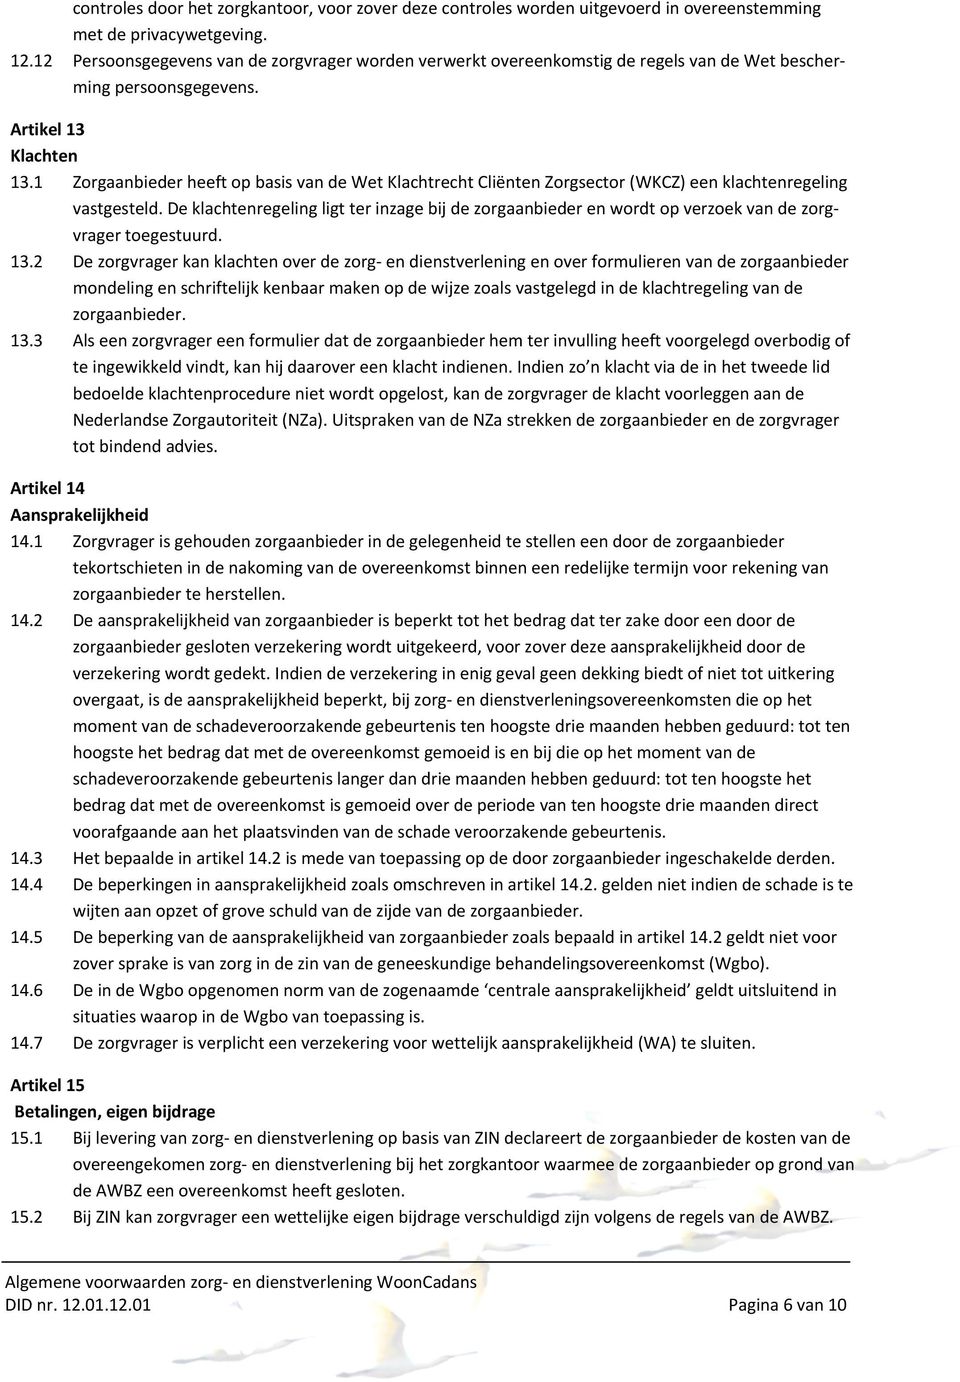 1 Zorgaanbieder heeft op basis van de Wet Klachtrecht Cliënten Zorgsector (WKCZ) een klachtenregeling vastgesteld.